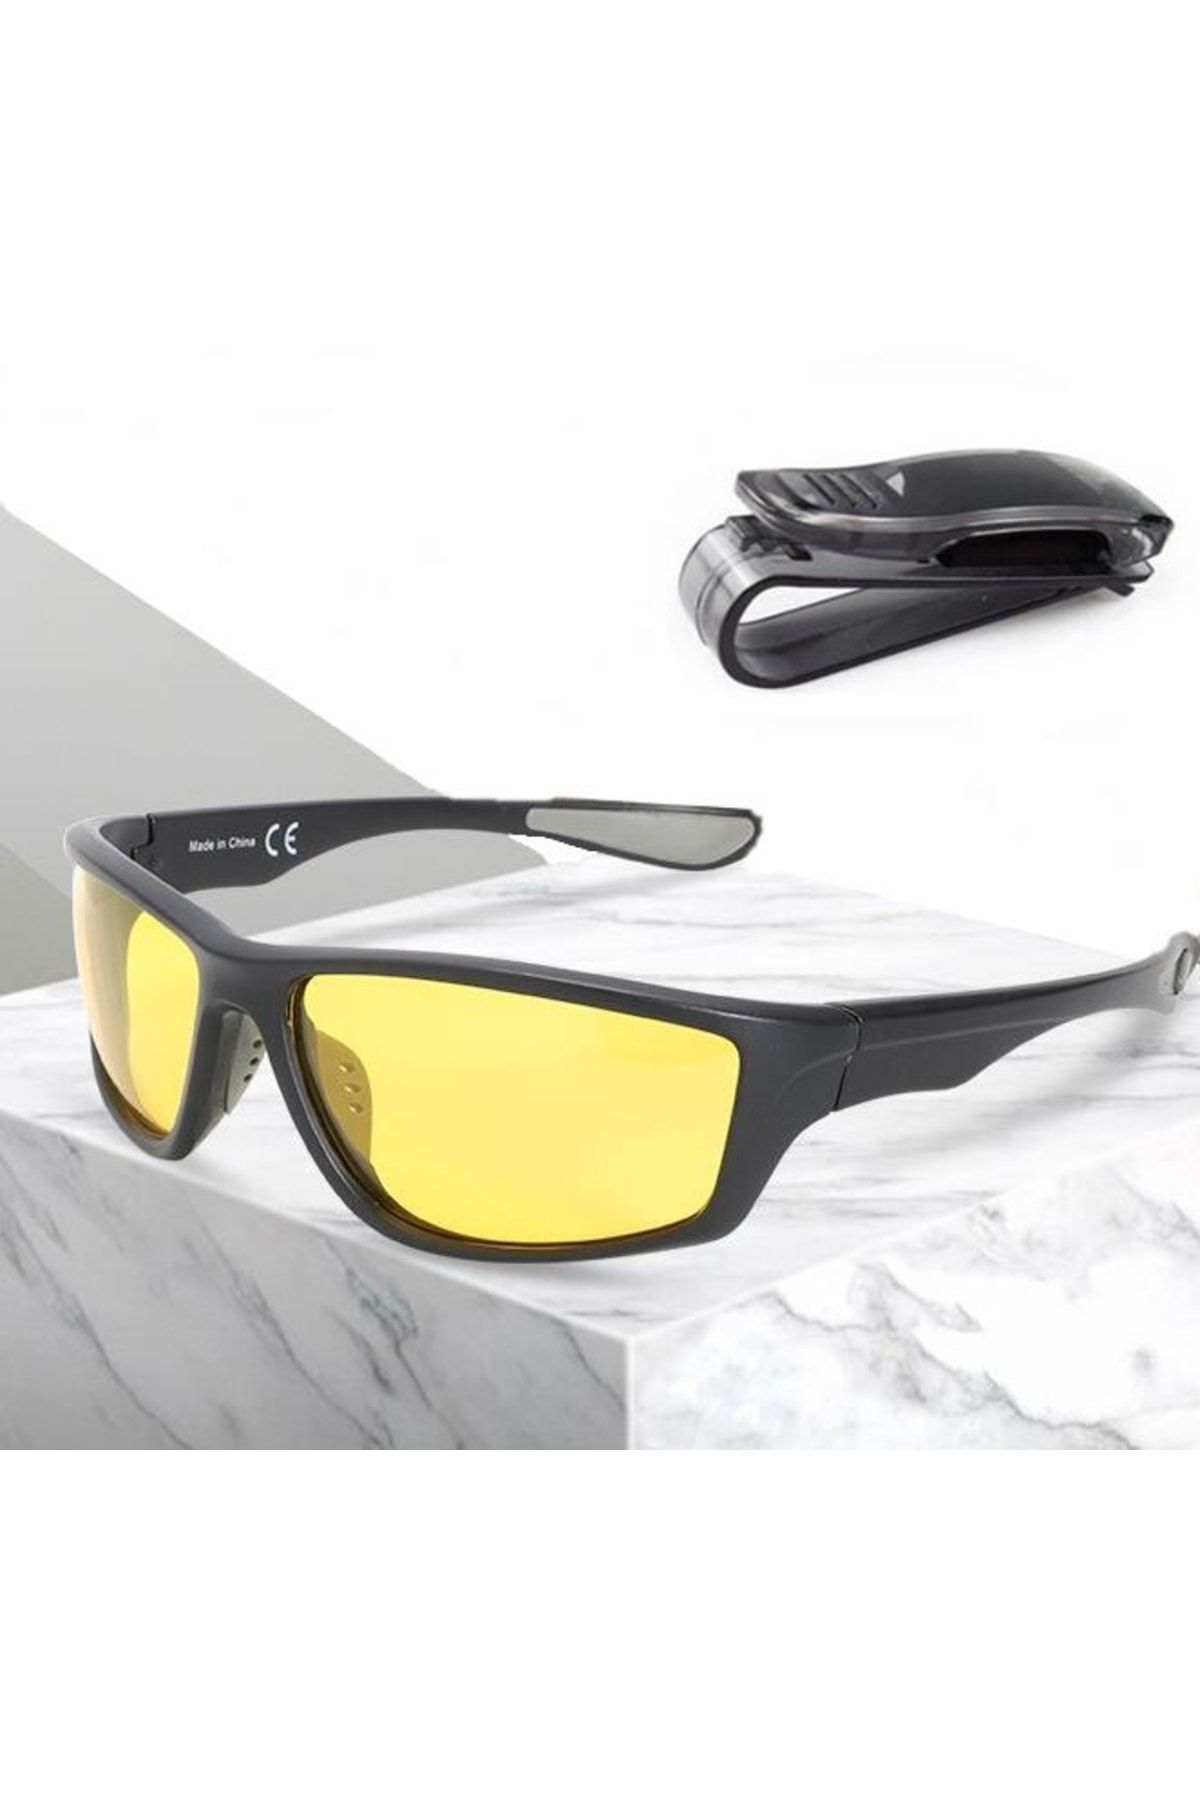 MasterCar Rüzgar Korumalı Uv400 Gece Sürüş Gözlüğü + Gözlük Tutucu